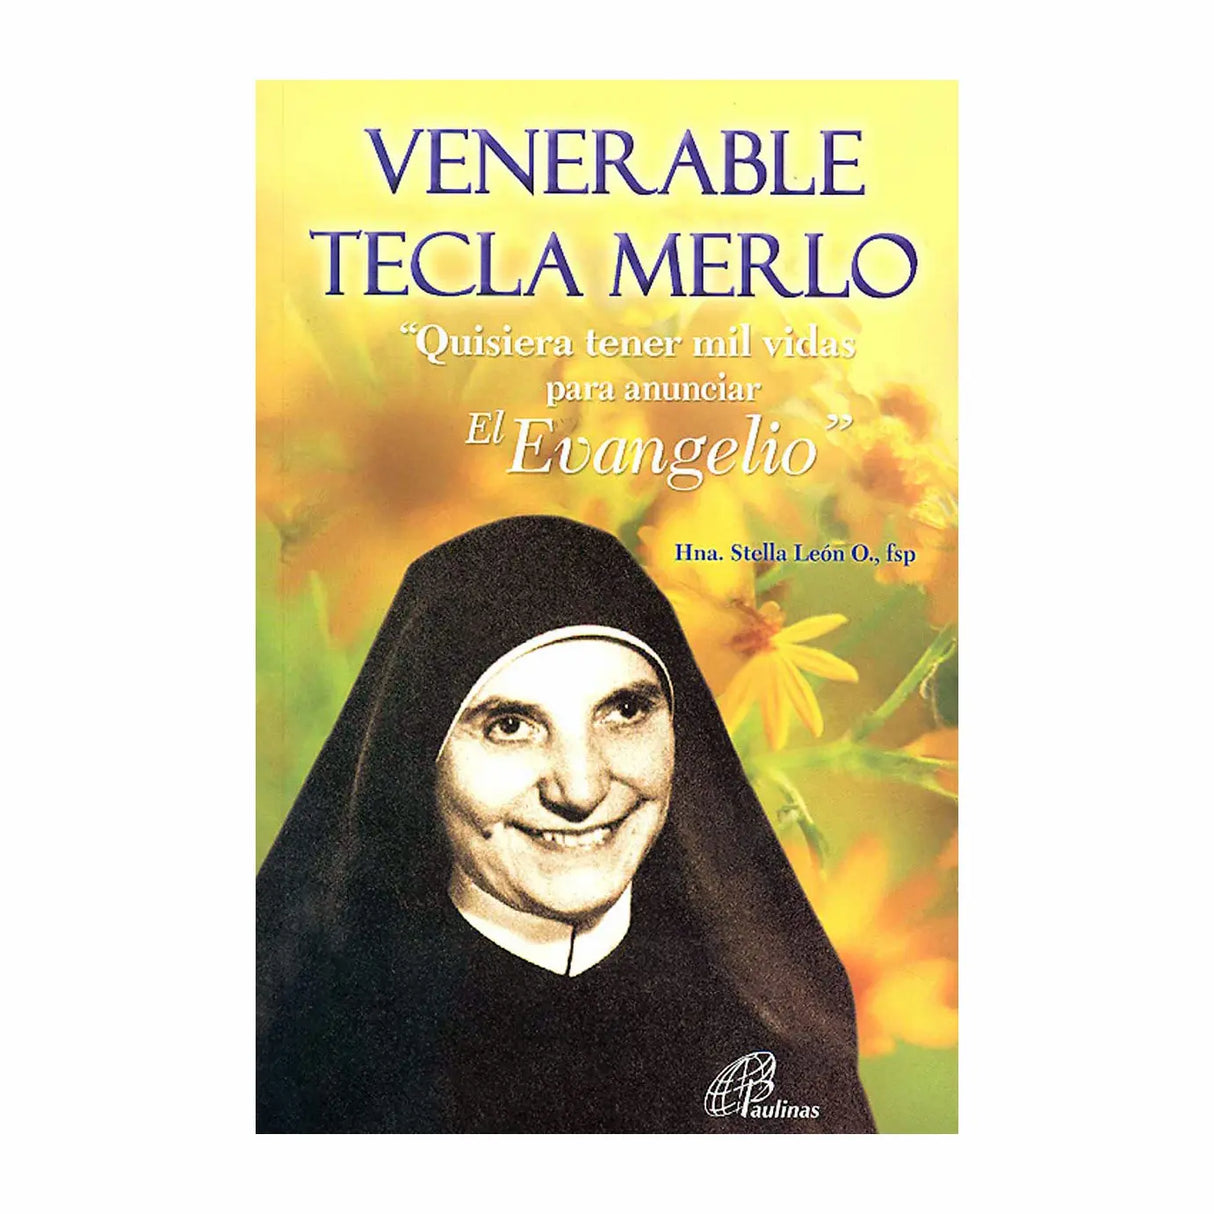 Venerable Tecla Merlo "Quisiera tener mil vidas para anunciar el evangelio"